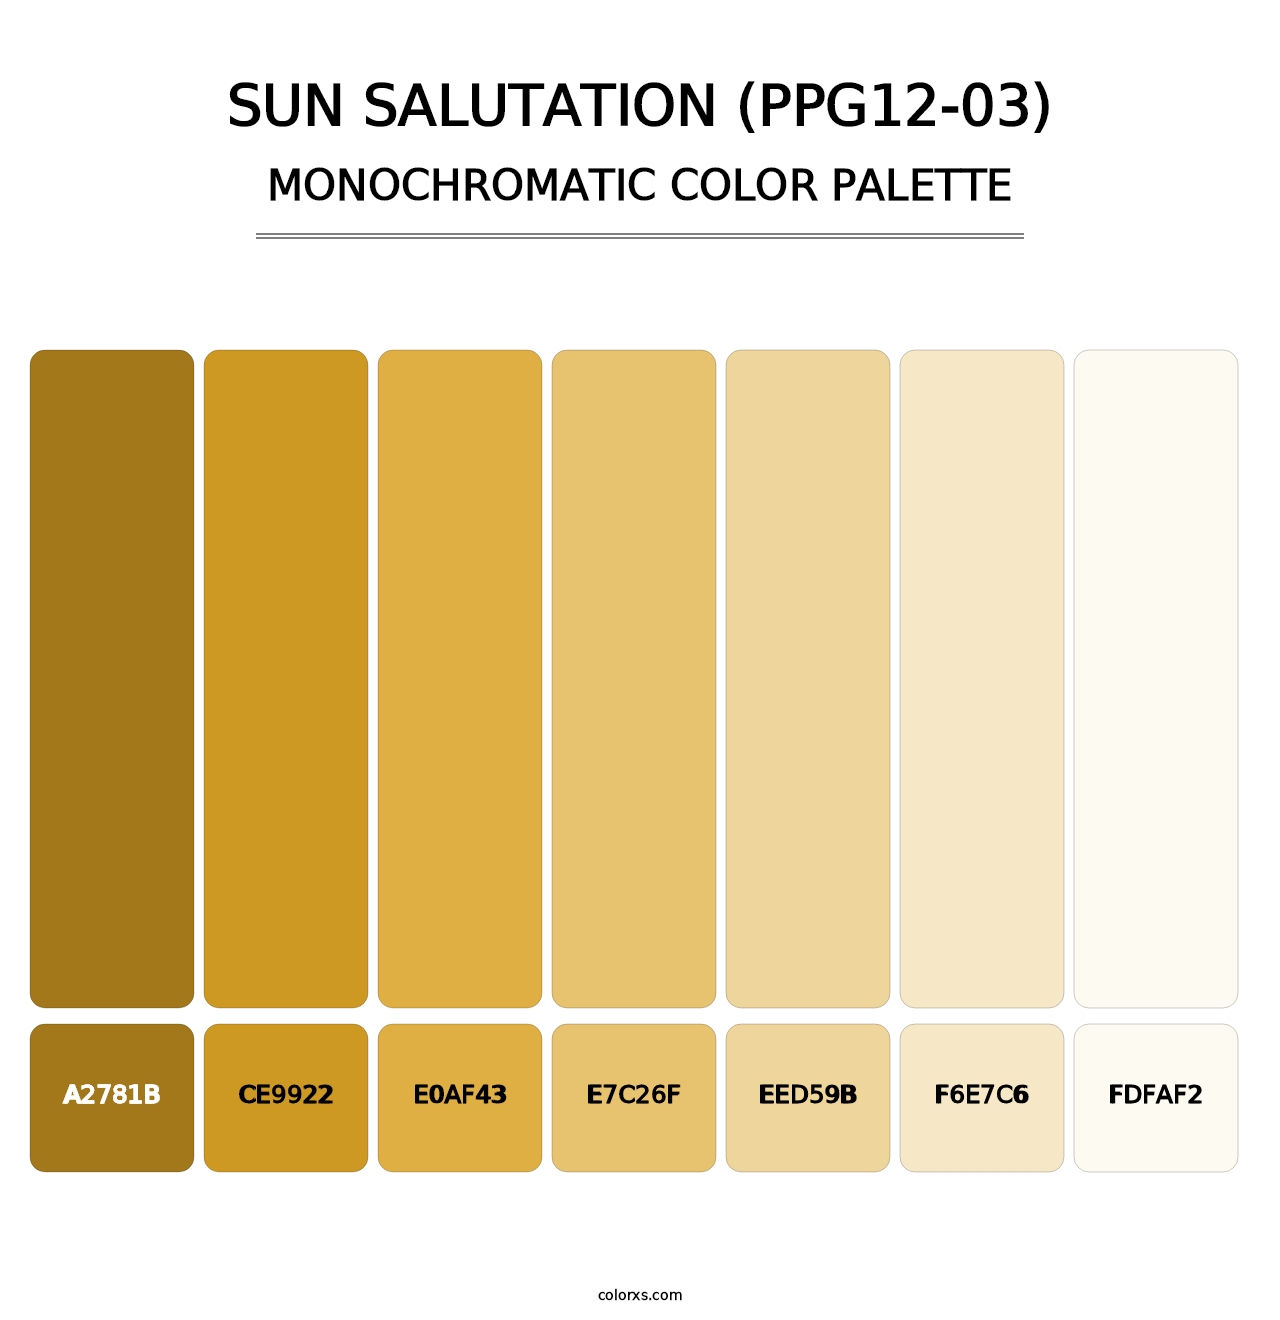 Sun Salutation (PPG12-03) - Monochromatic Color Palette